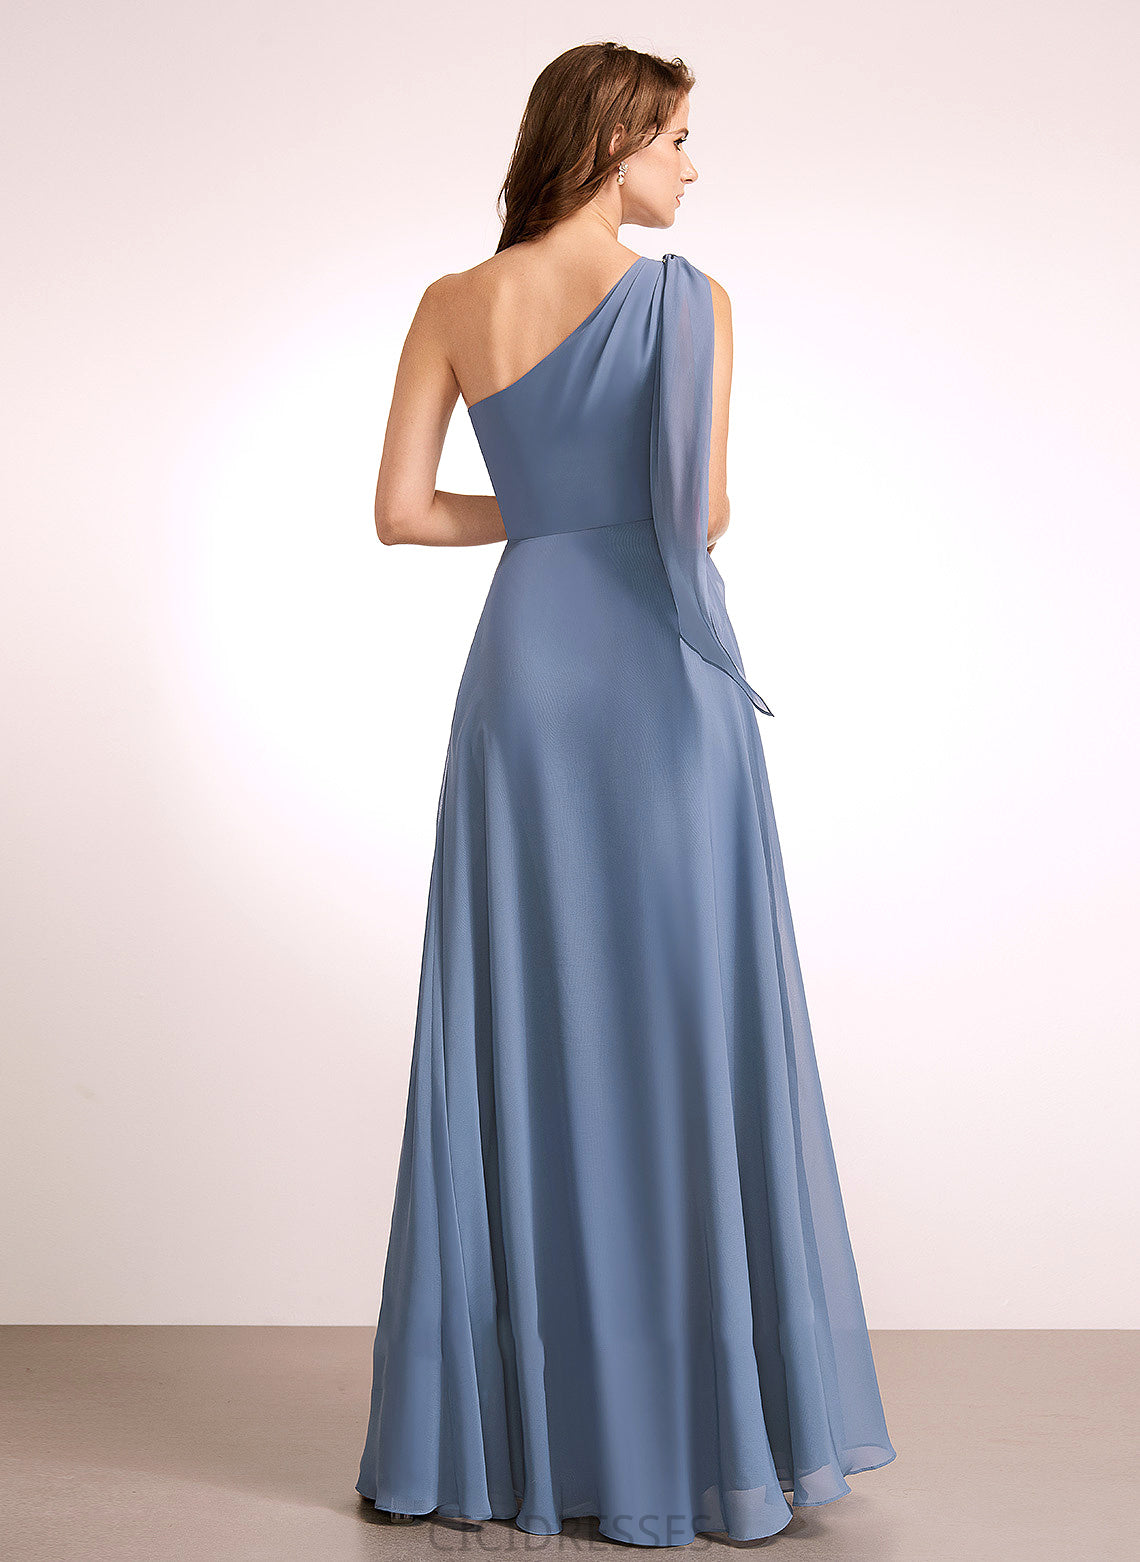 One-Shoulder Fabric Embellishment Neckline Bow(s) A-Line Length Silhouette Floor-Length Giuliana Floor Length A-Line/Princess Bridesmaid Dresses